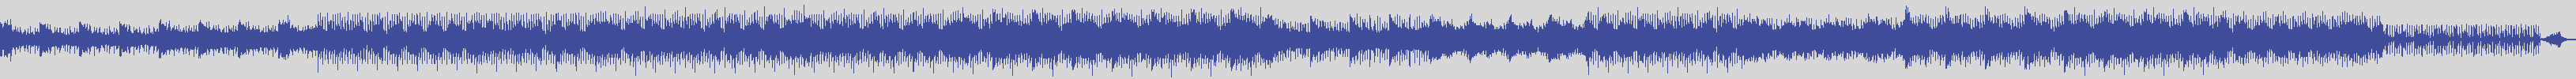 noclouds_chillout [NOC136] The Square - Cel [Original Mix] audio wave form